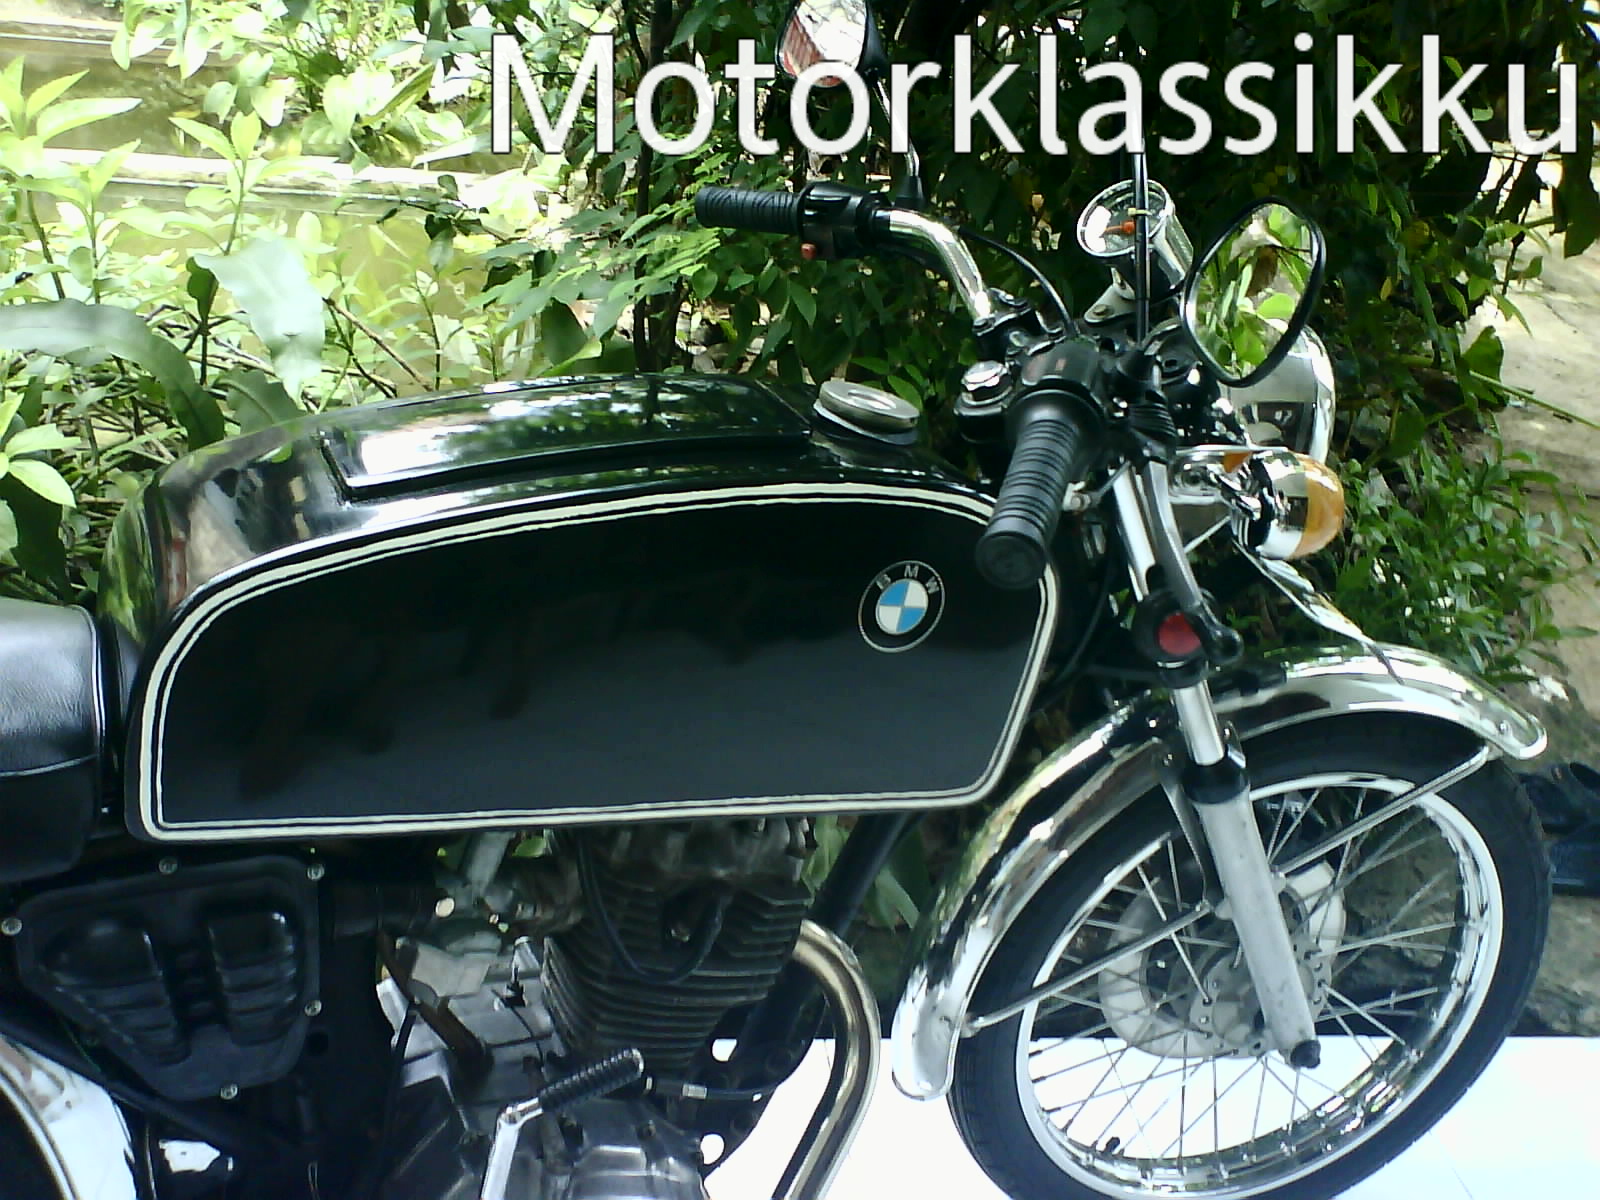 BMW K 100 GL Modifikasi Honda GL 100 K Motorklassikku